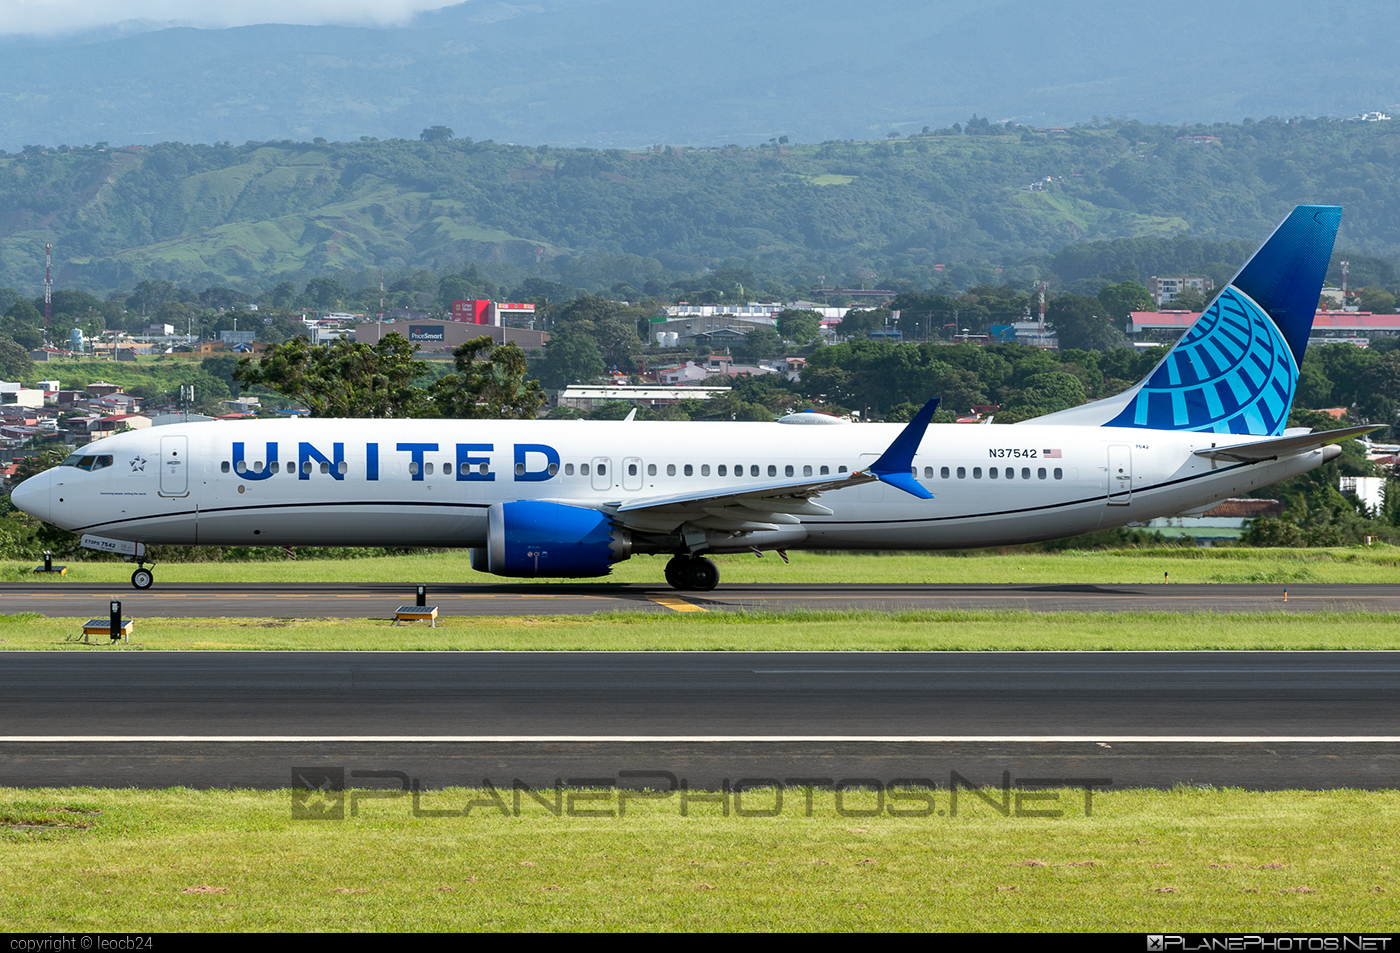 Boeing 737-9 MAX - N37542 operated by United Airlines #SanJoseJuanSantamariaIntl #b737 #b737max #boeing #boeing737 #unitedairlines